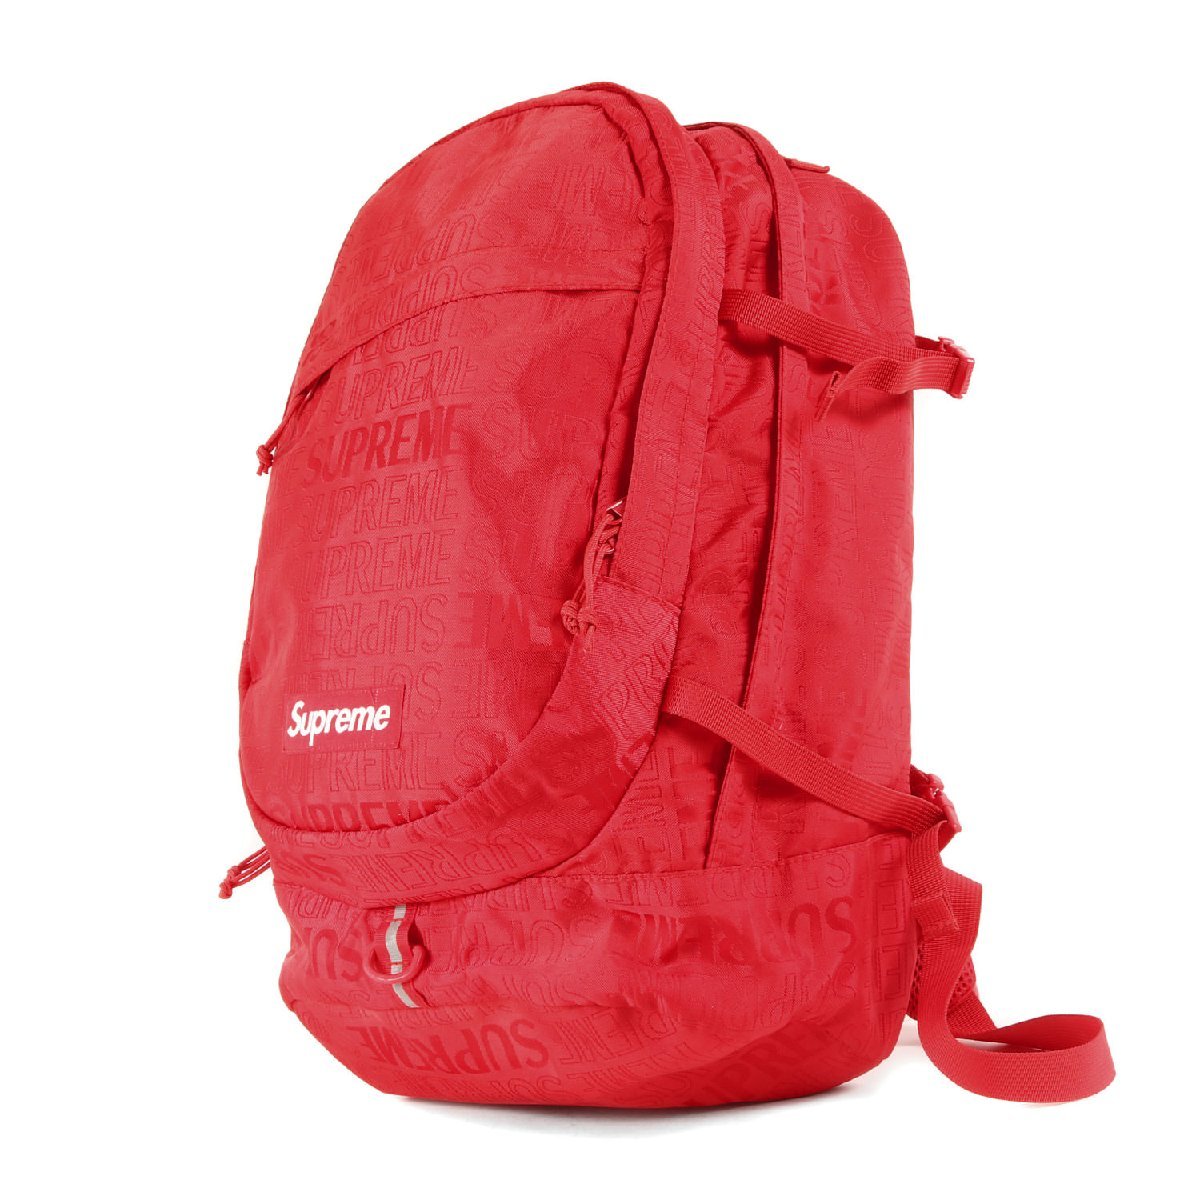 Supreme シュプリーム 19SS ブランドロゴ 柄 コーデュラナイロン バックパック Backpack カバン リュック レッド 赤 ブランド